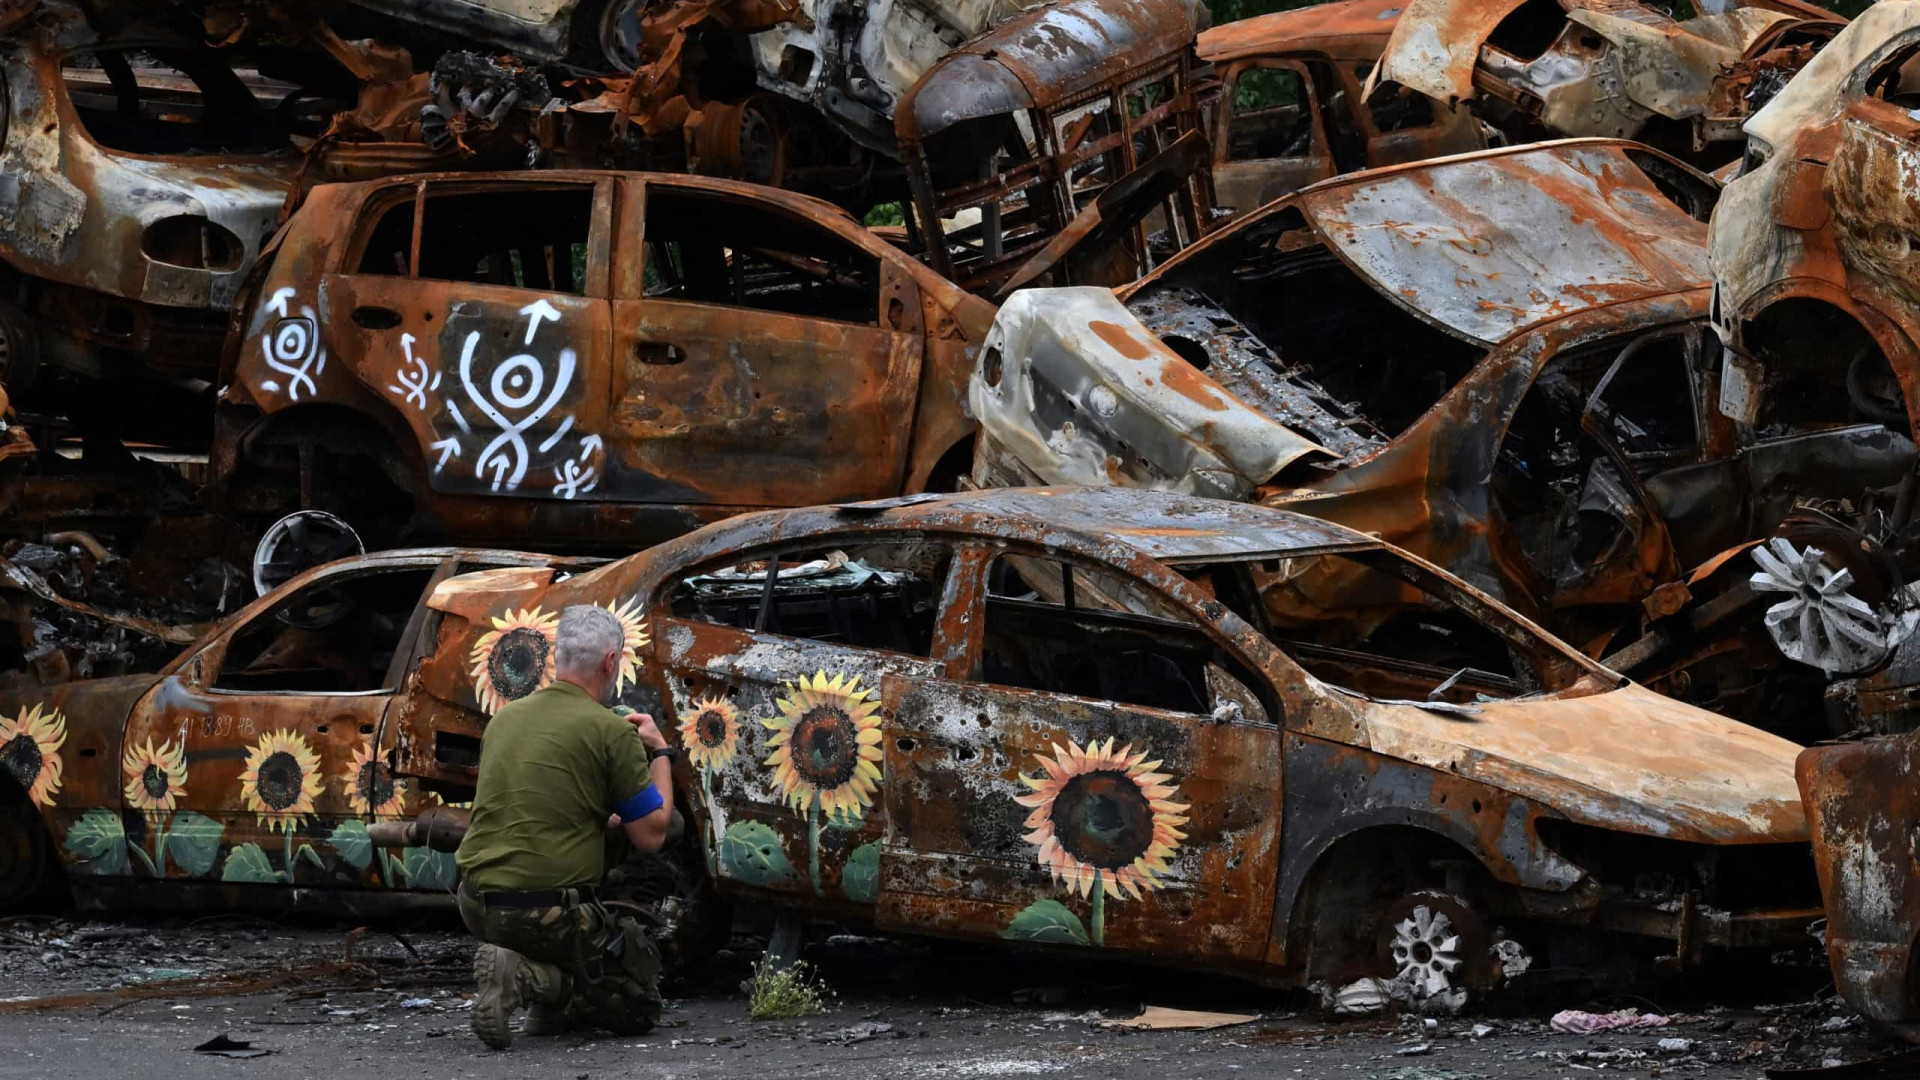 Carros destruídos na guerra são pintados... com girassóis